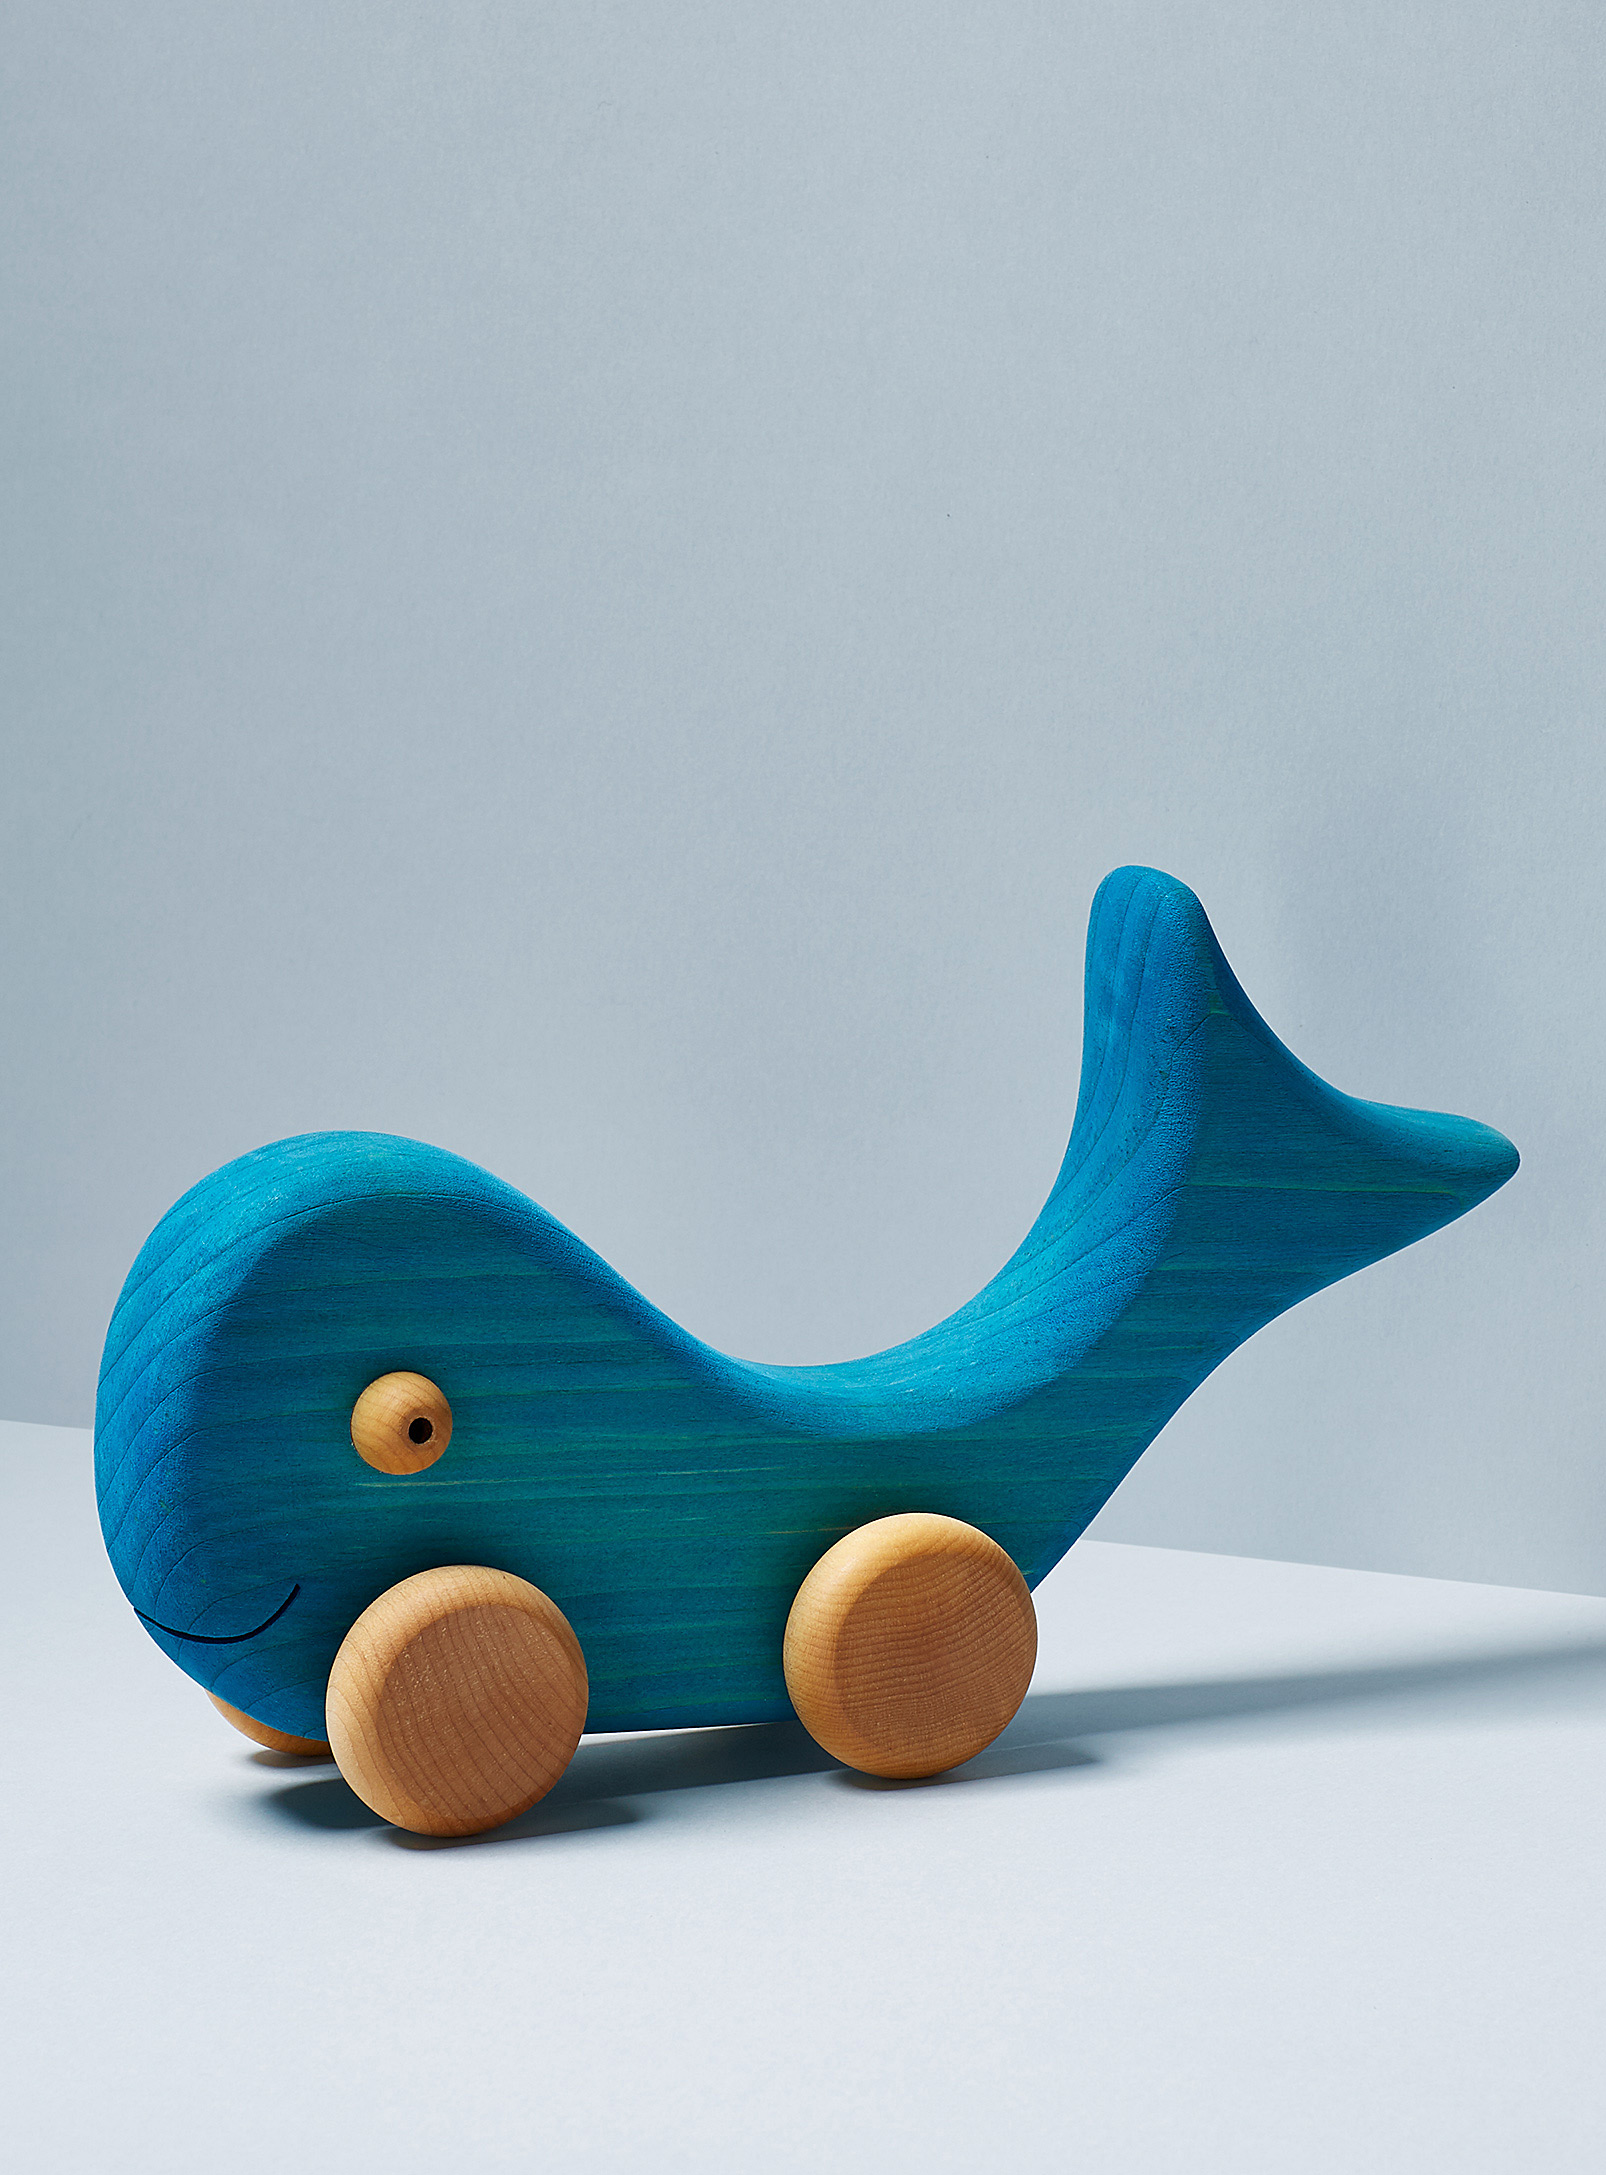 Atelier cheval de bois - La baleine bleue